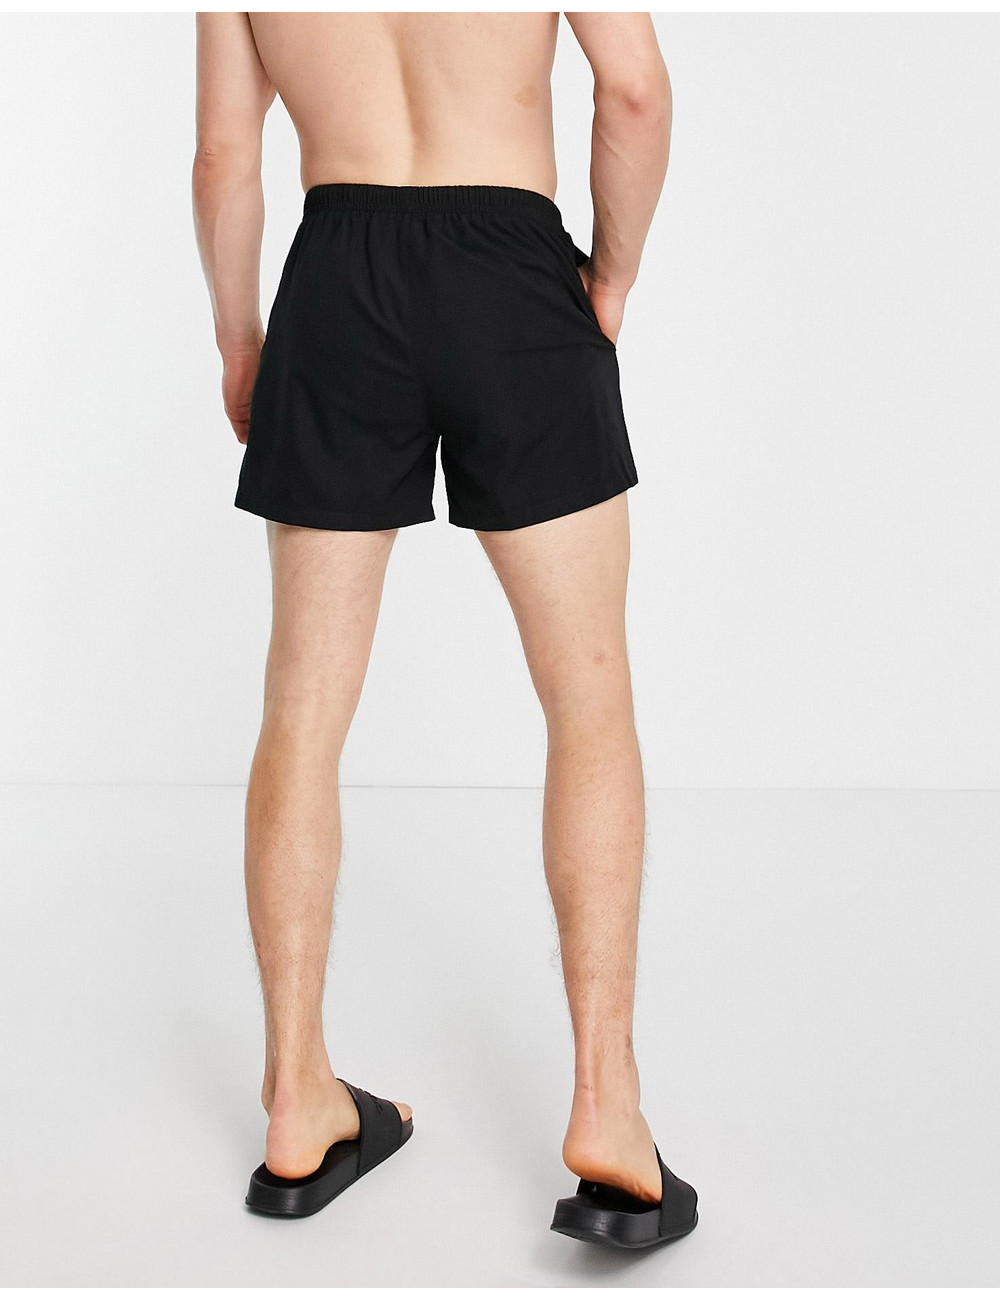 COLLUSION swim shorts in black